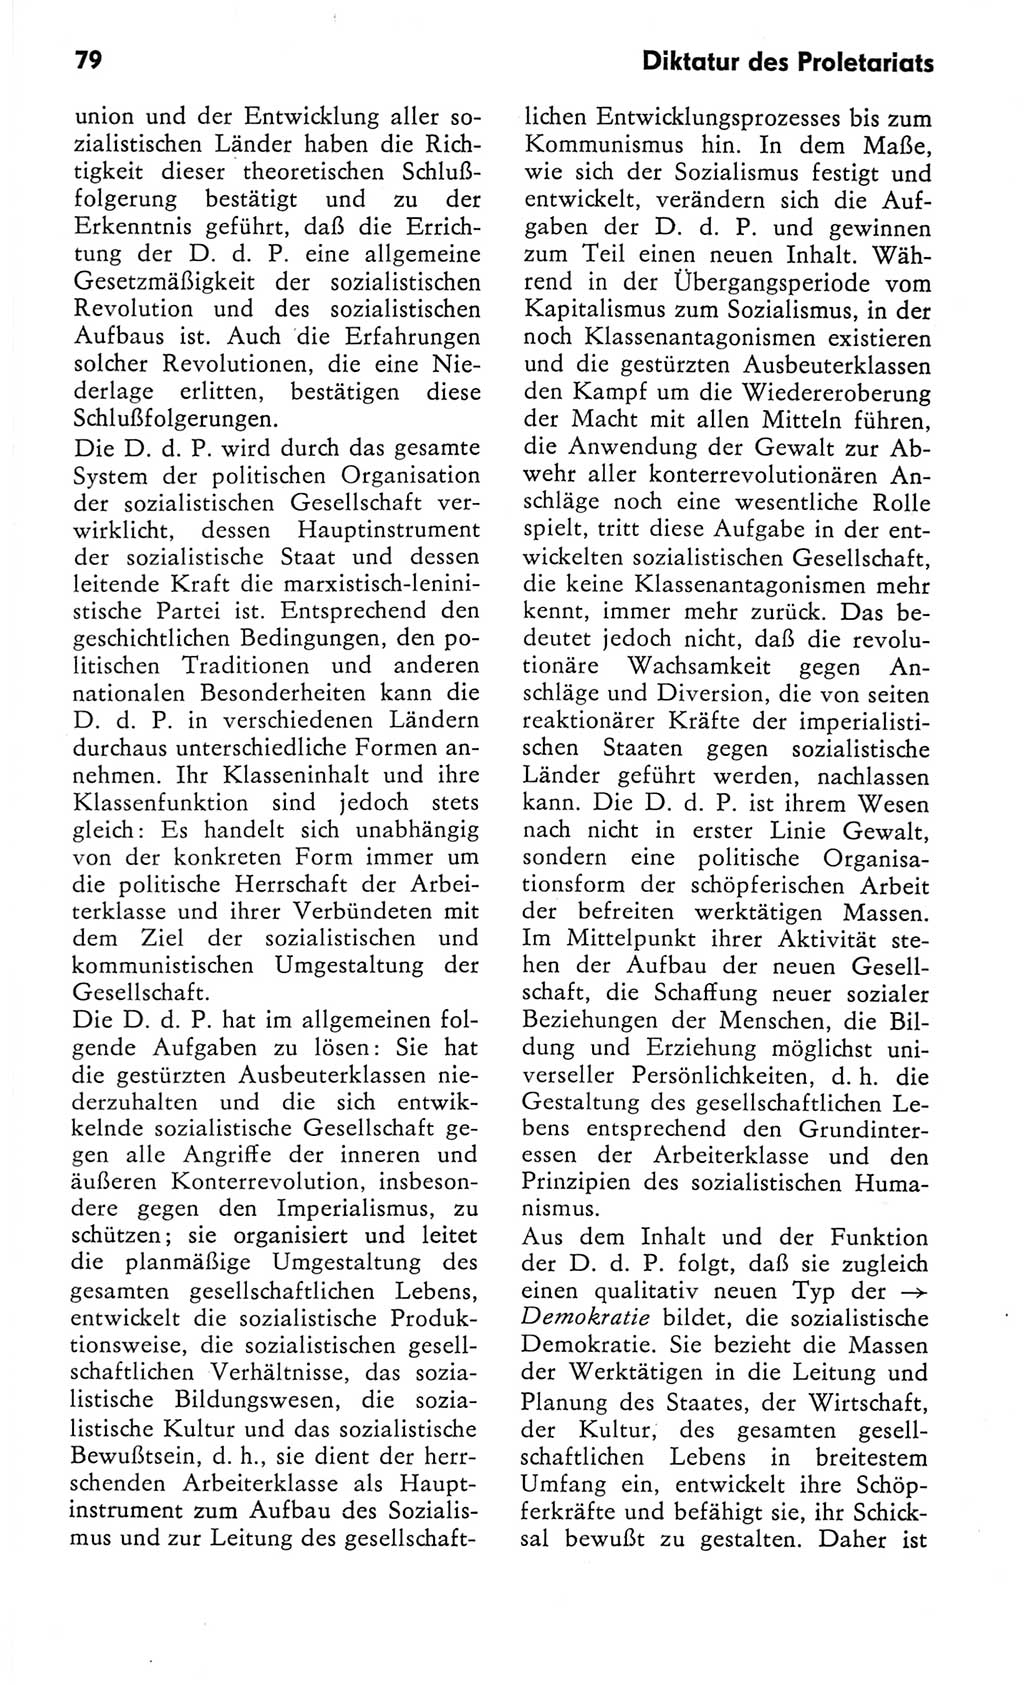 Kleines Wörterbuch der marxistisch-leninistischen Philosophie [Deutsche Demokratische Republik (DDR)] 1982, Seite 79 (Kl. Wb. ML Phil. DDR 1982, S. 79)